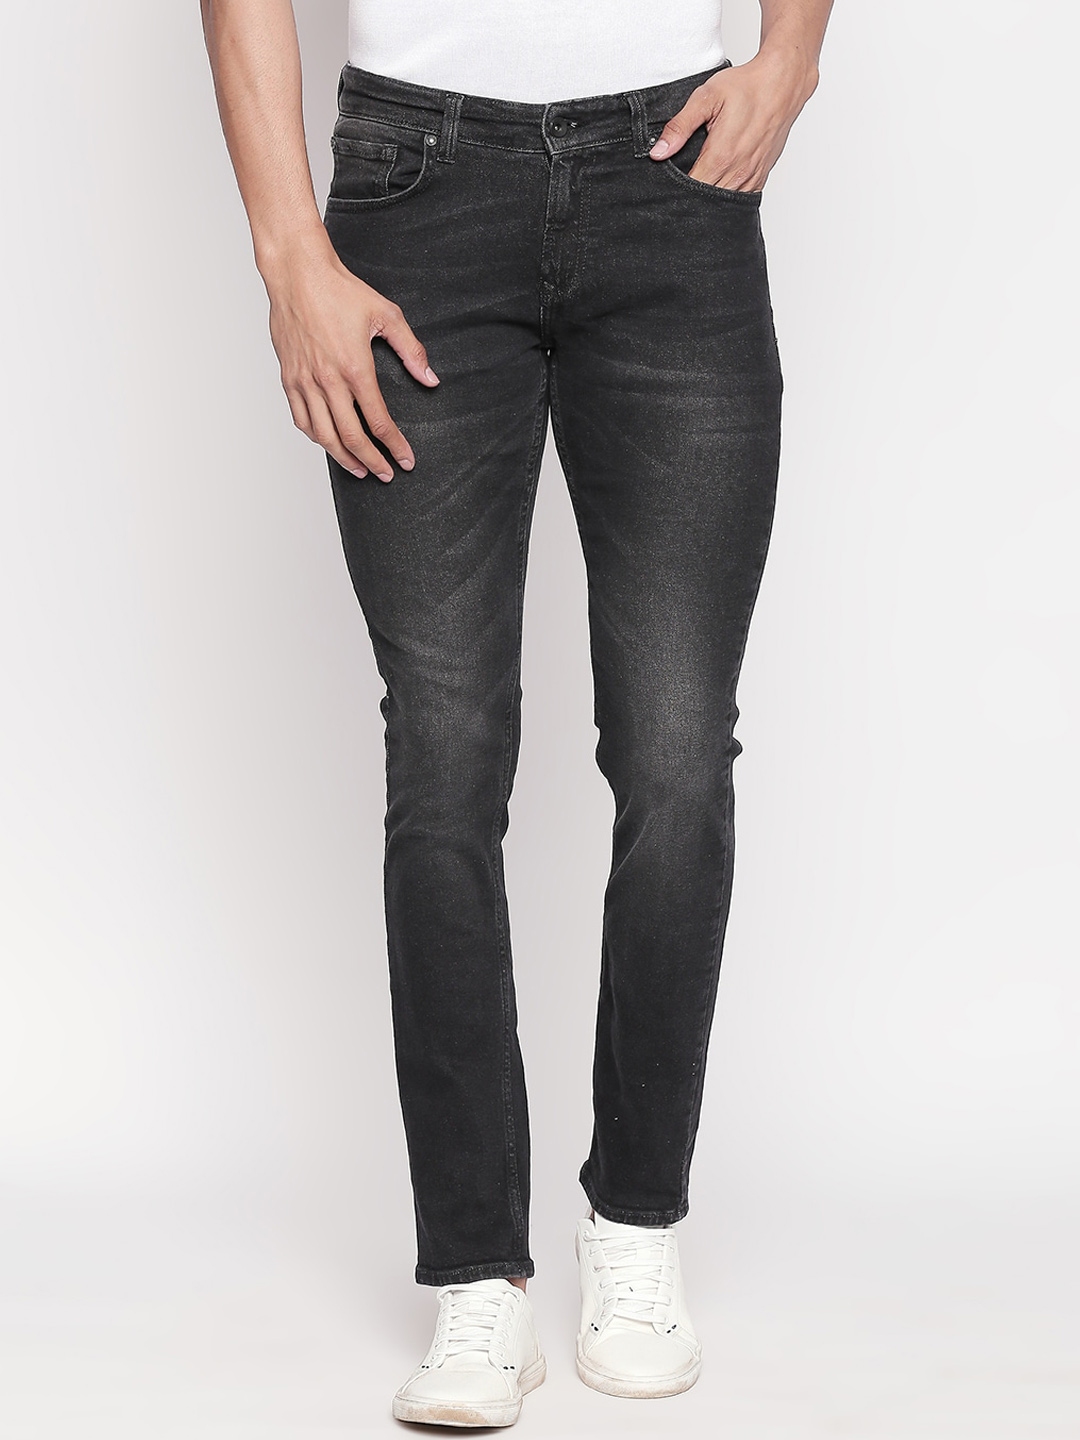 Buy SPYKAR Men Black Relaxed Fit Light Fade Jeans - Jeans for Men ...